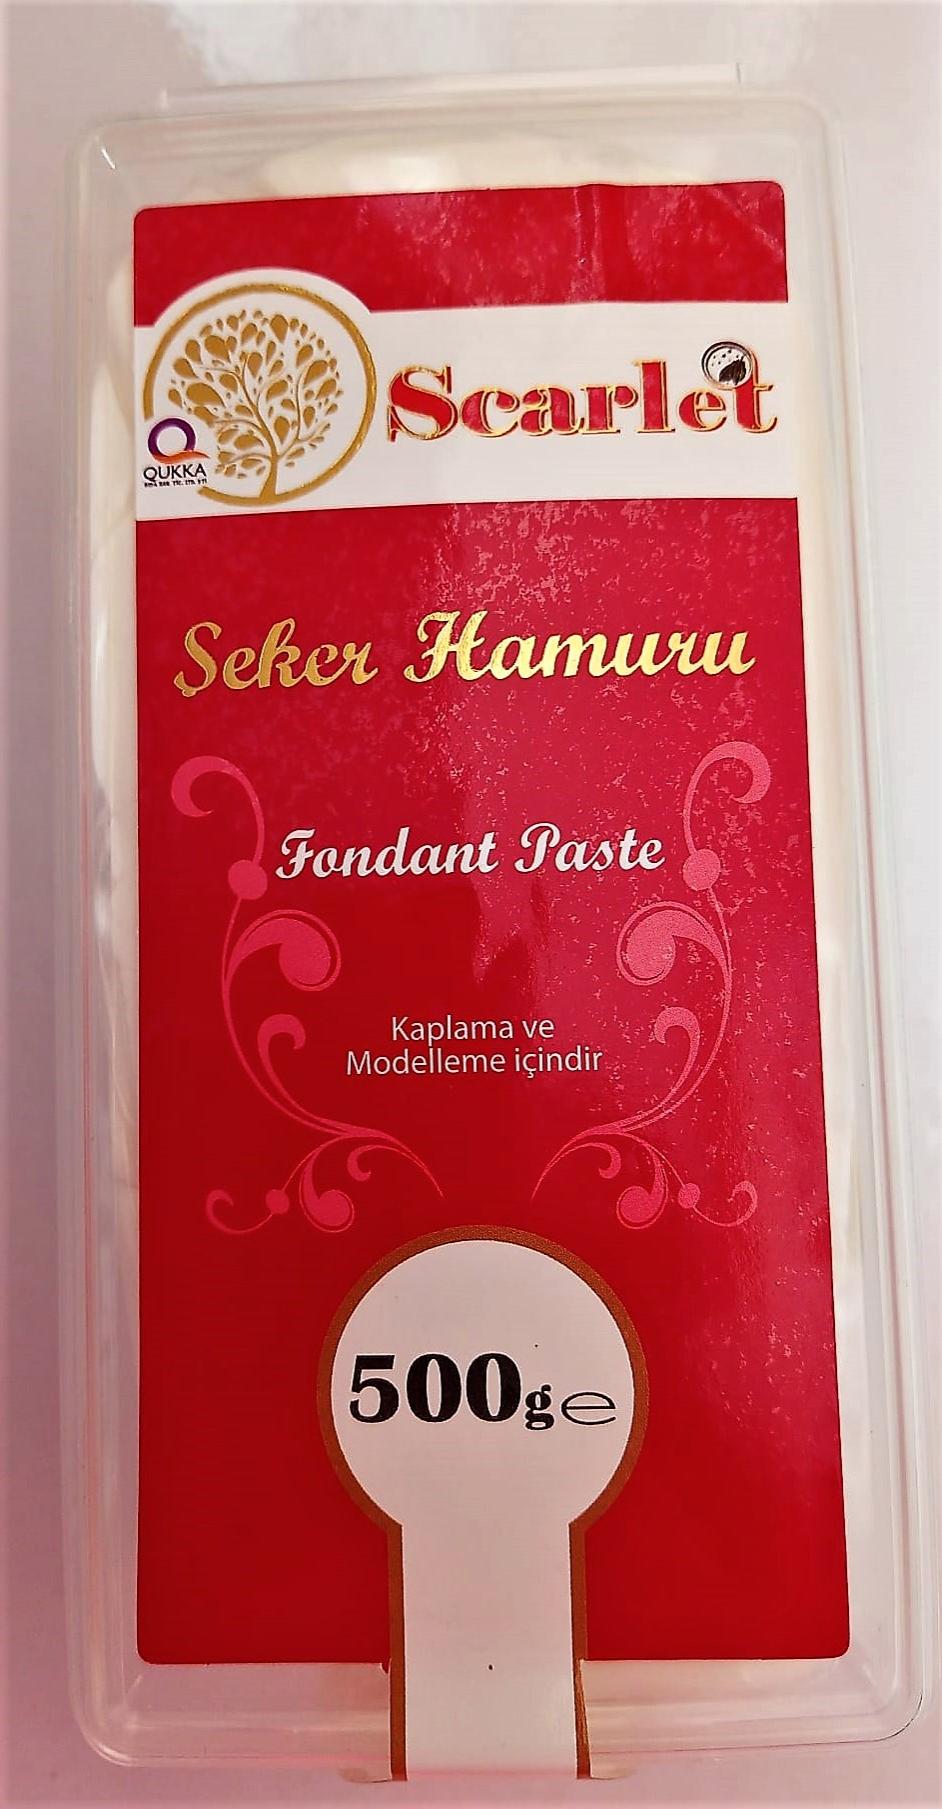 SCARLET TURKUAZ ŞEKER HAMURU (500 GR)